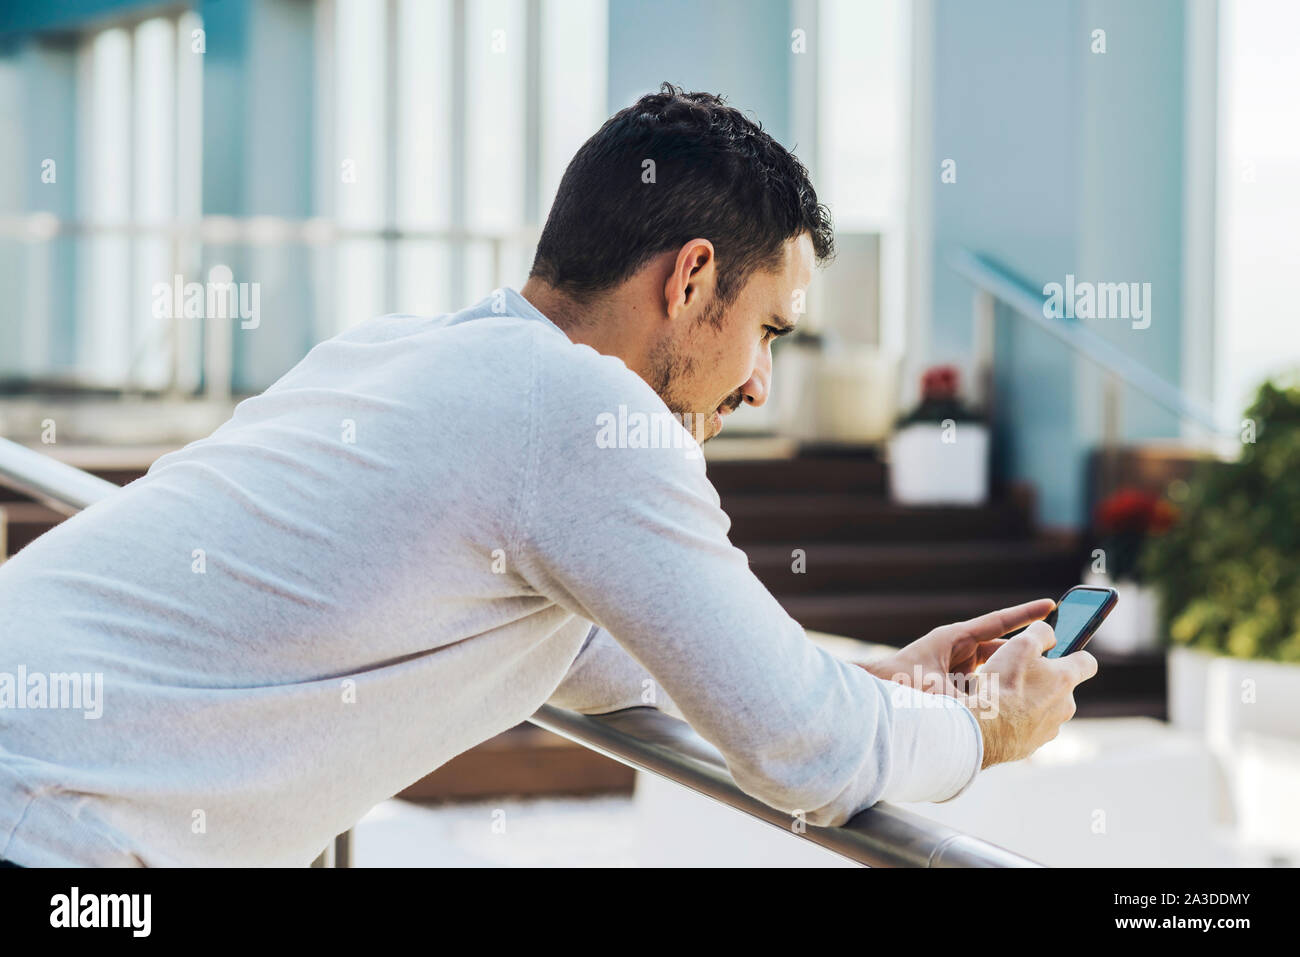 Young man leaning on railing lors de l'utilisation de téléphone mobile Banque D'Images